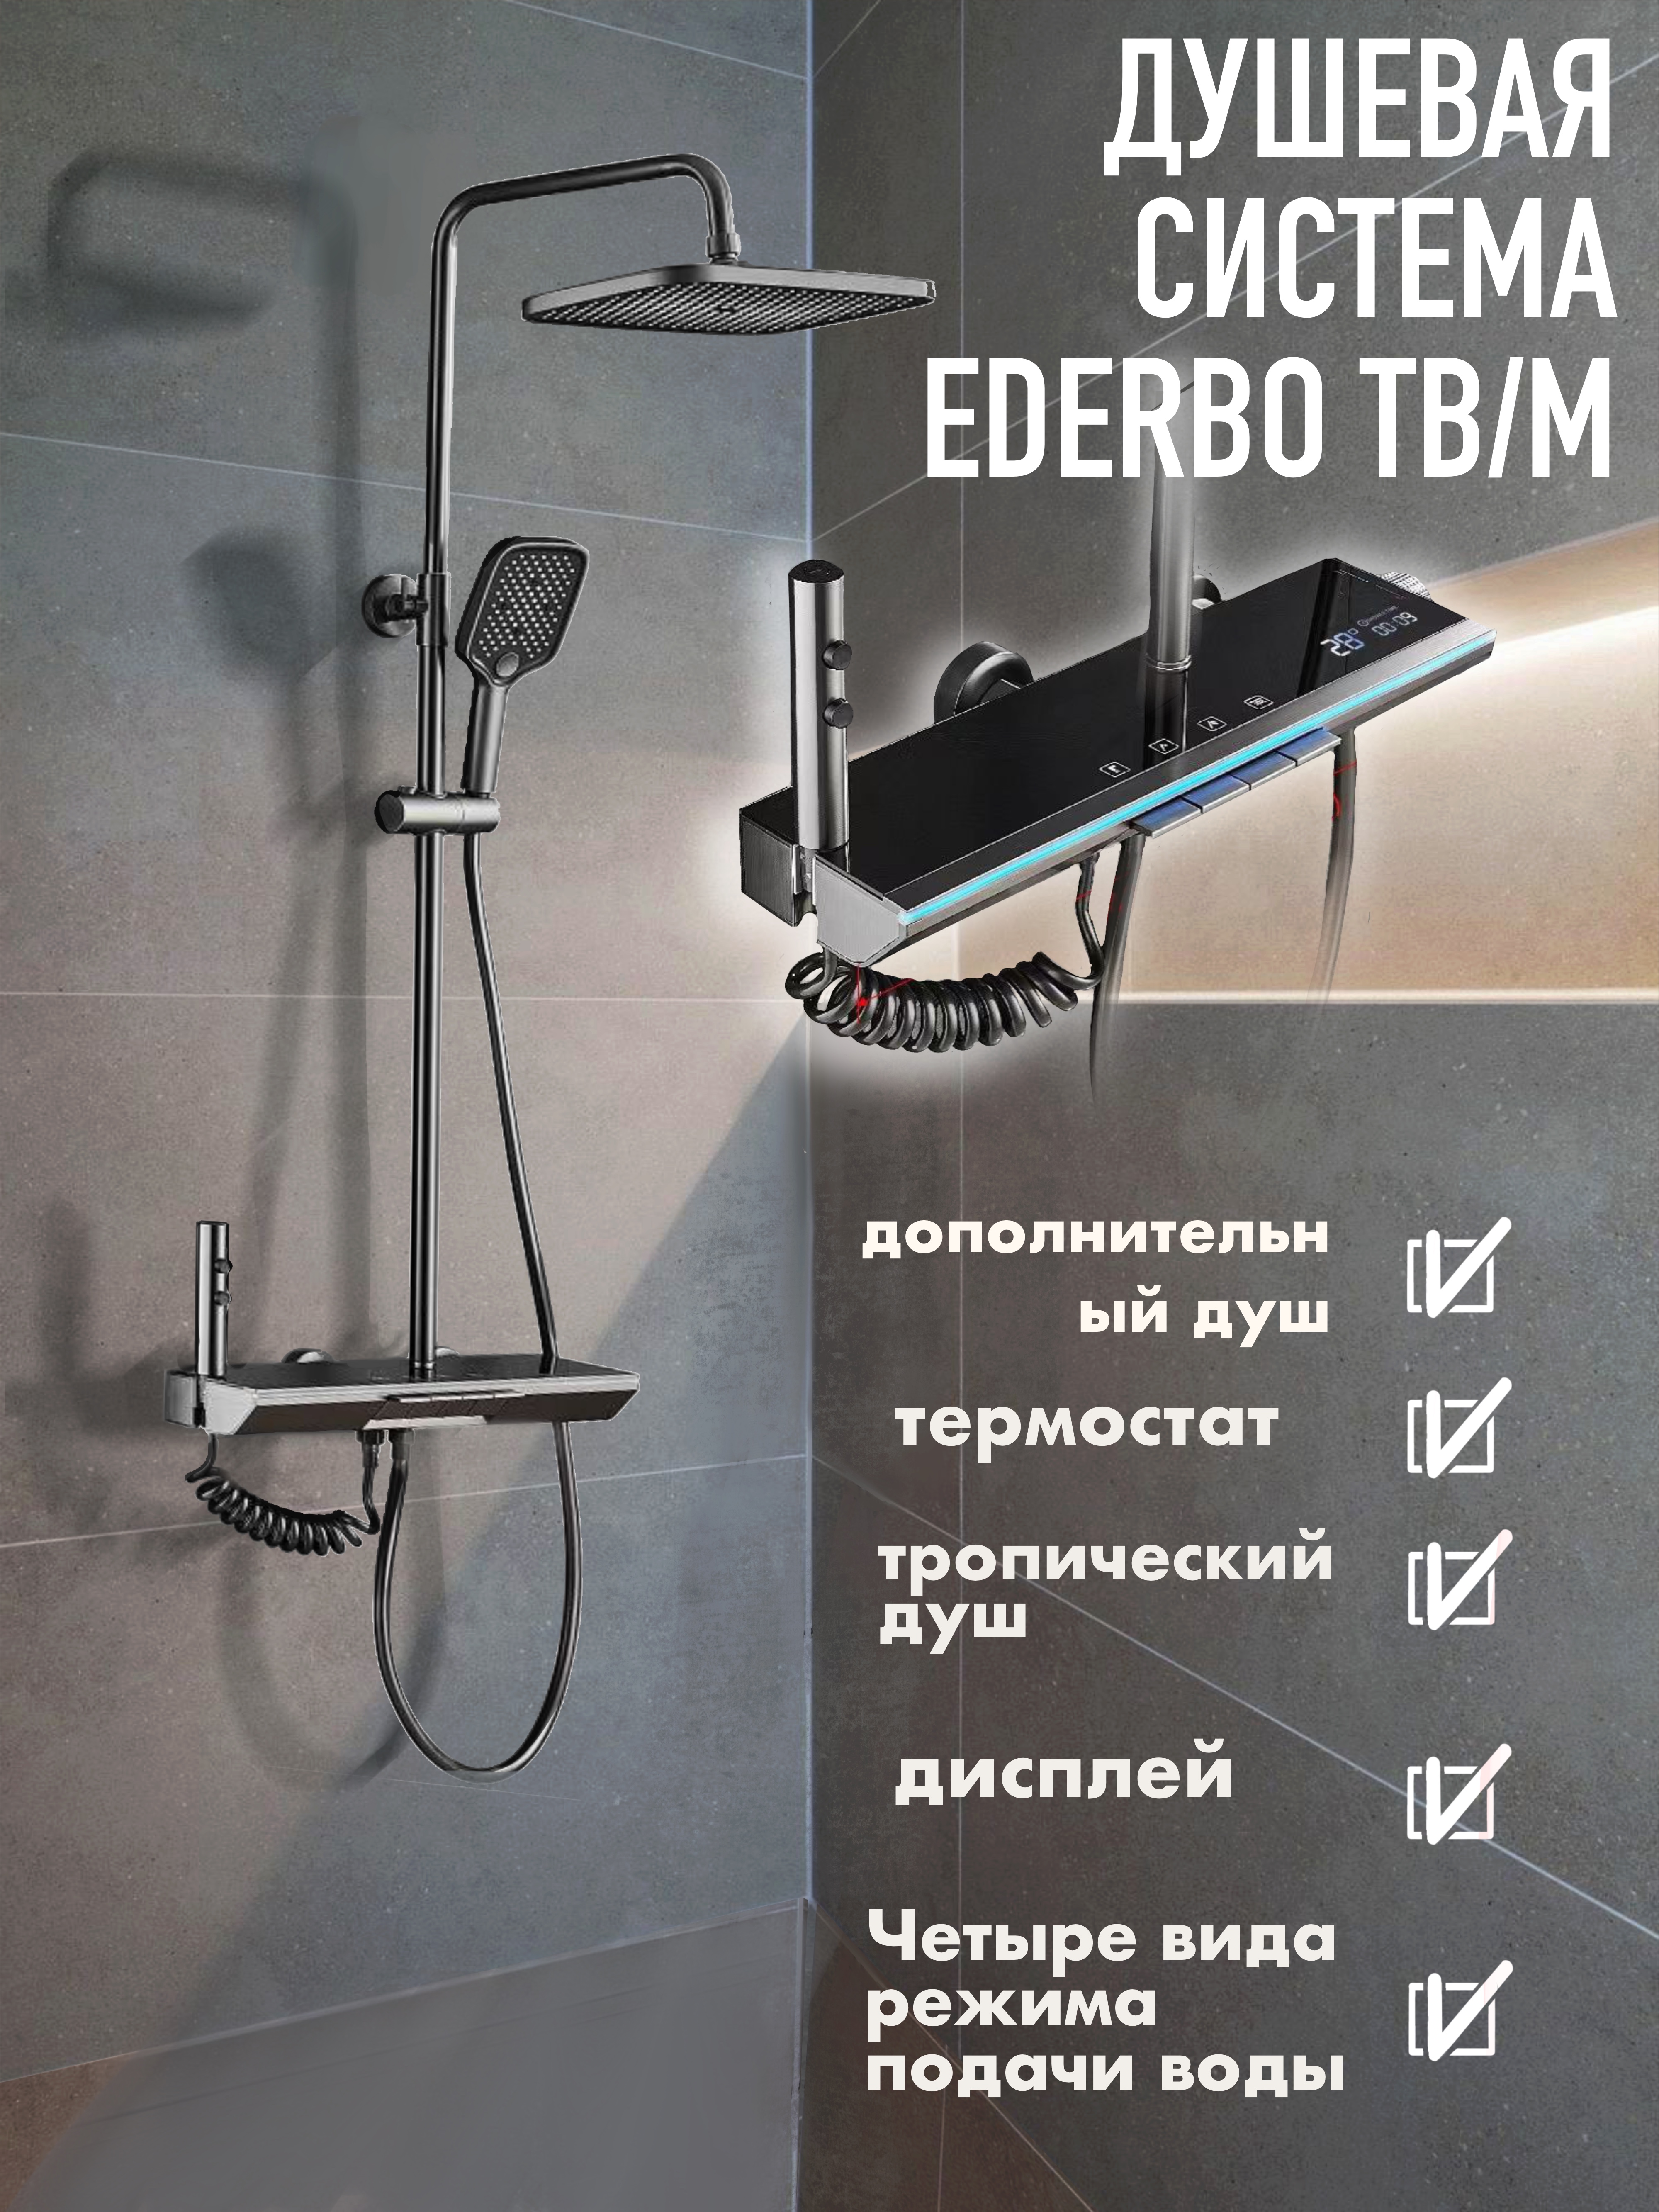 Душевая система тропический душ термостат дисплей Ederbo TB/M